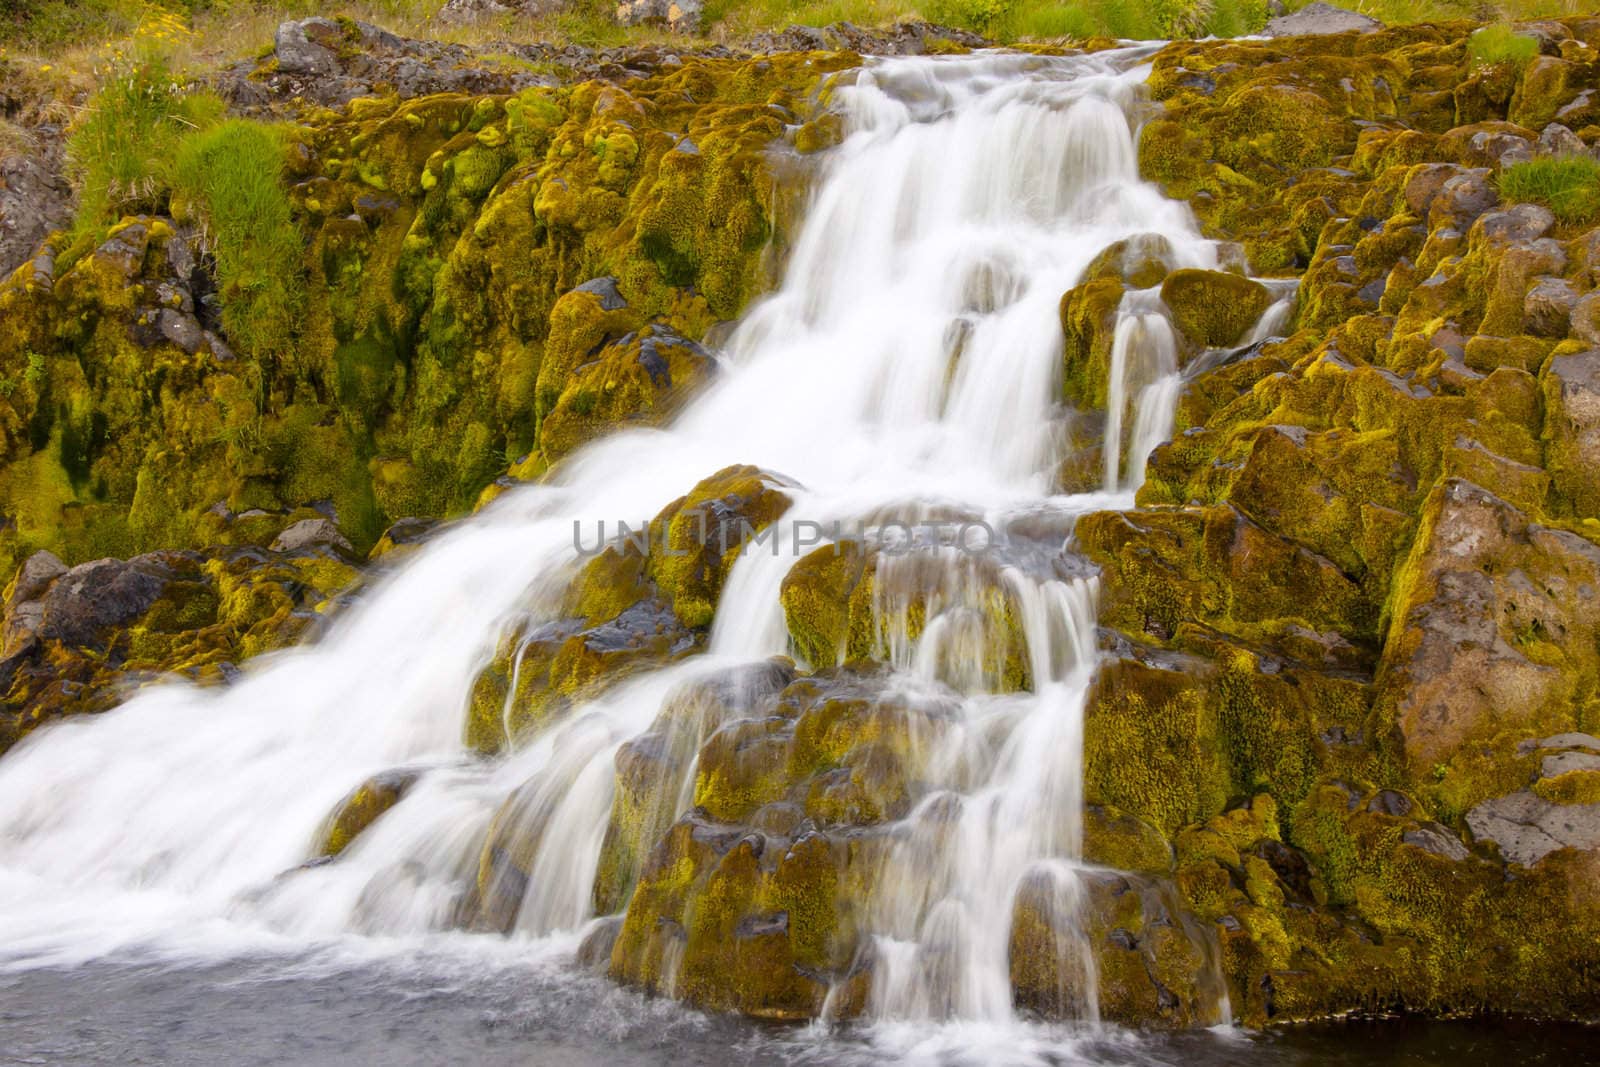 Small part of big and beauty Dynjandi waterfall - Iceland.